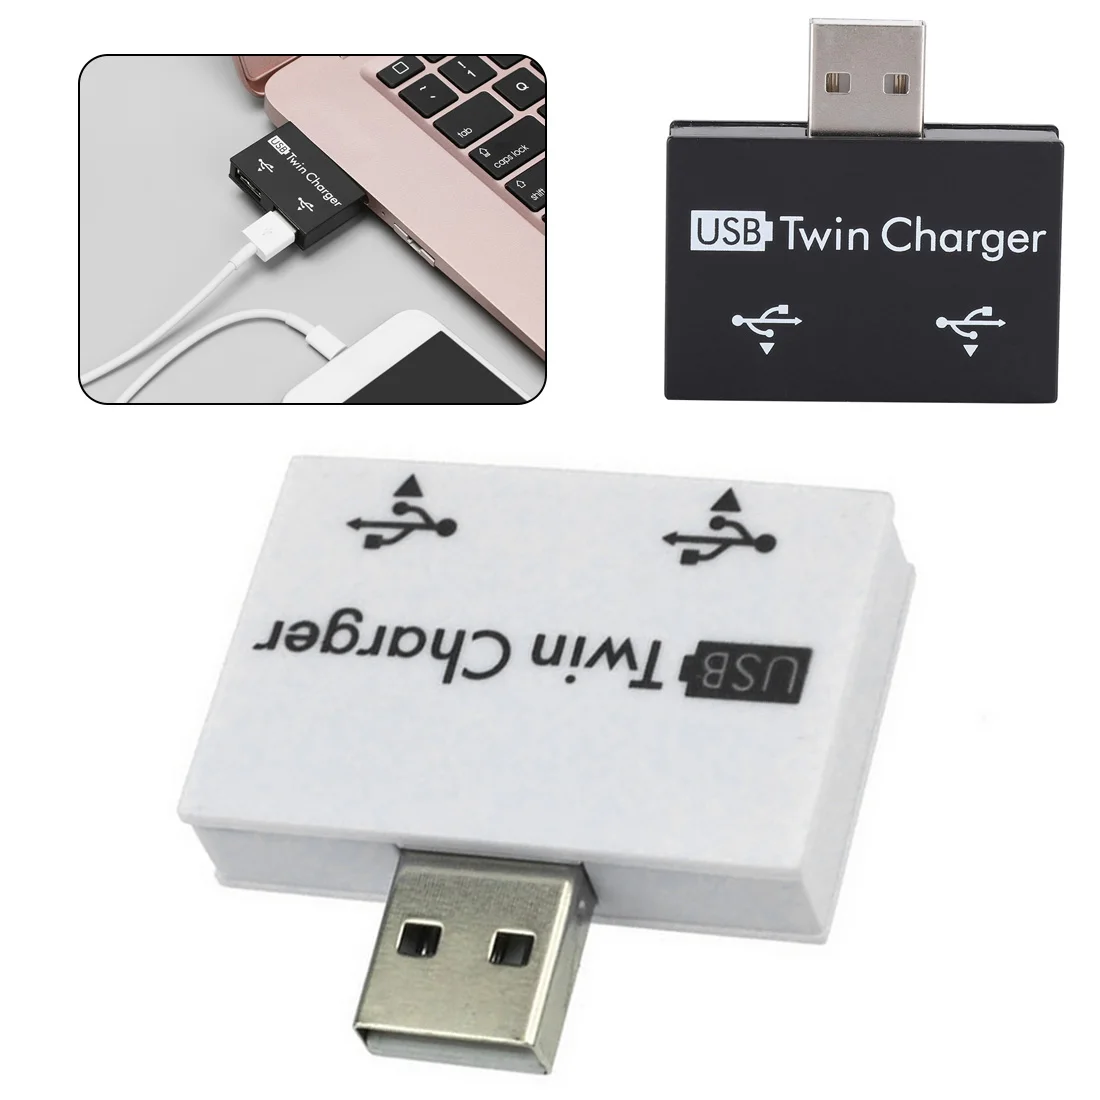 Горячая продажа Модный Новый USB сплиттер мини-usb-концентратор в 2 порта зарядное устройство концентратор адаптер для телефона планшета